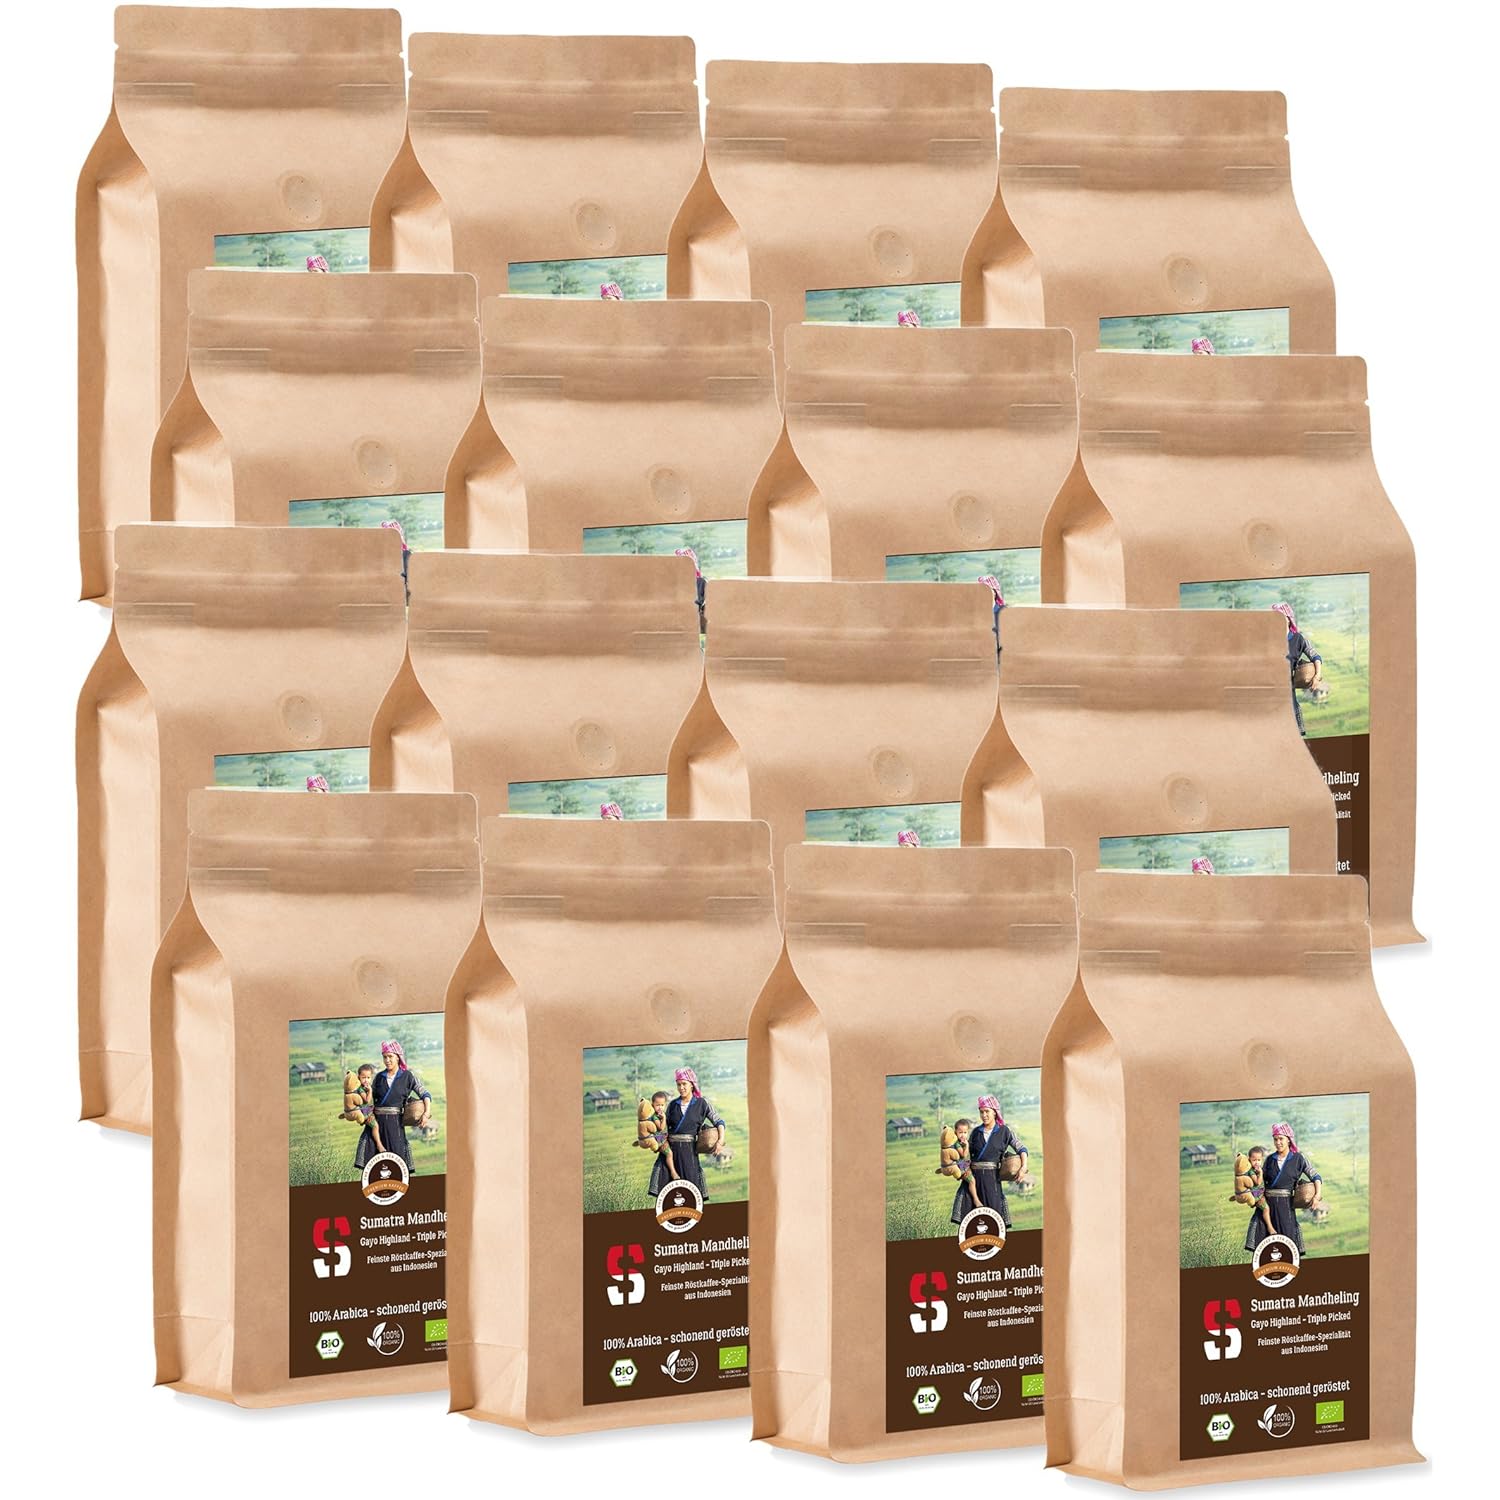 Coffee Globetrotter - Sumatra Mandheling Gayo Highland - Organic - 16 x 1000 g Medium Ground - for Fully Automatic Coffee Grinder - Roasted Coffee from Organic Cultivation | Gastropack Economy Pack